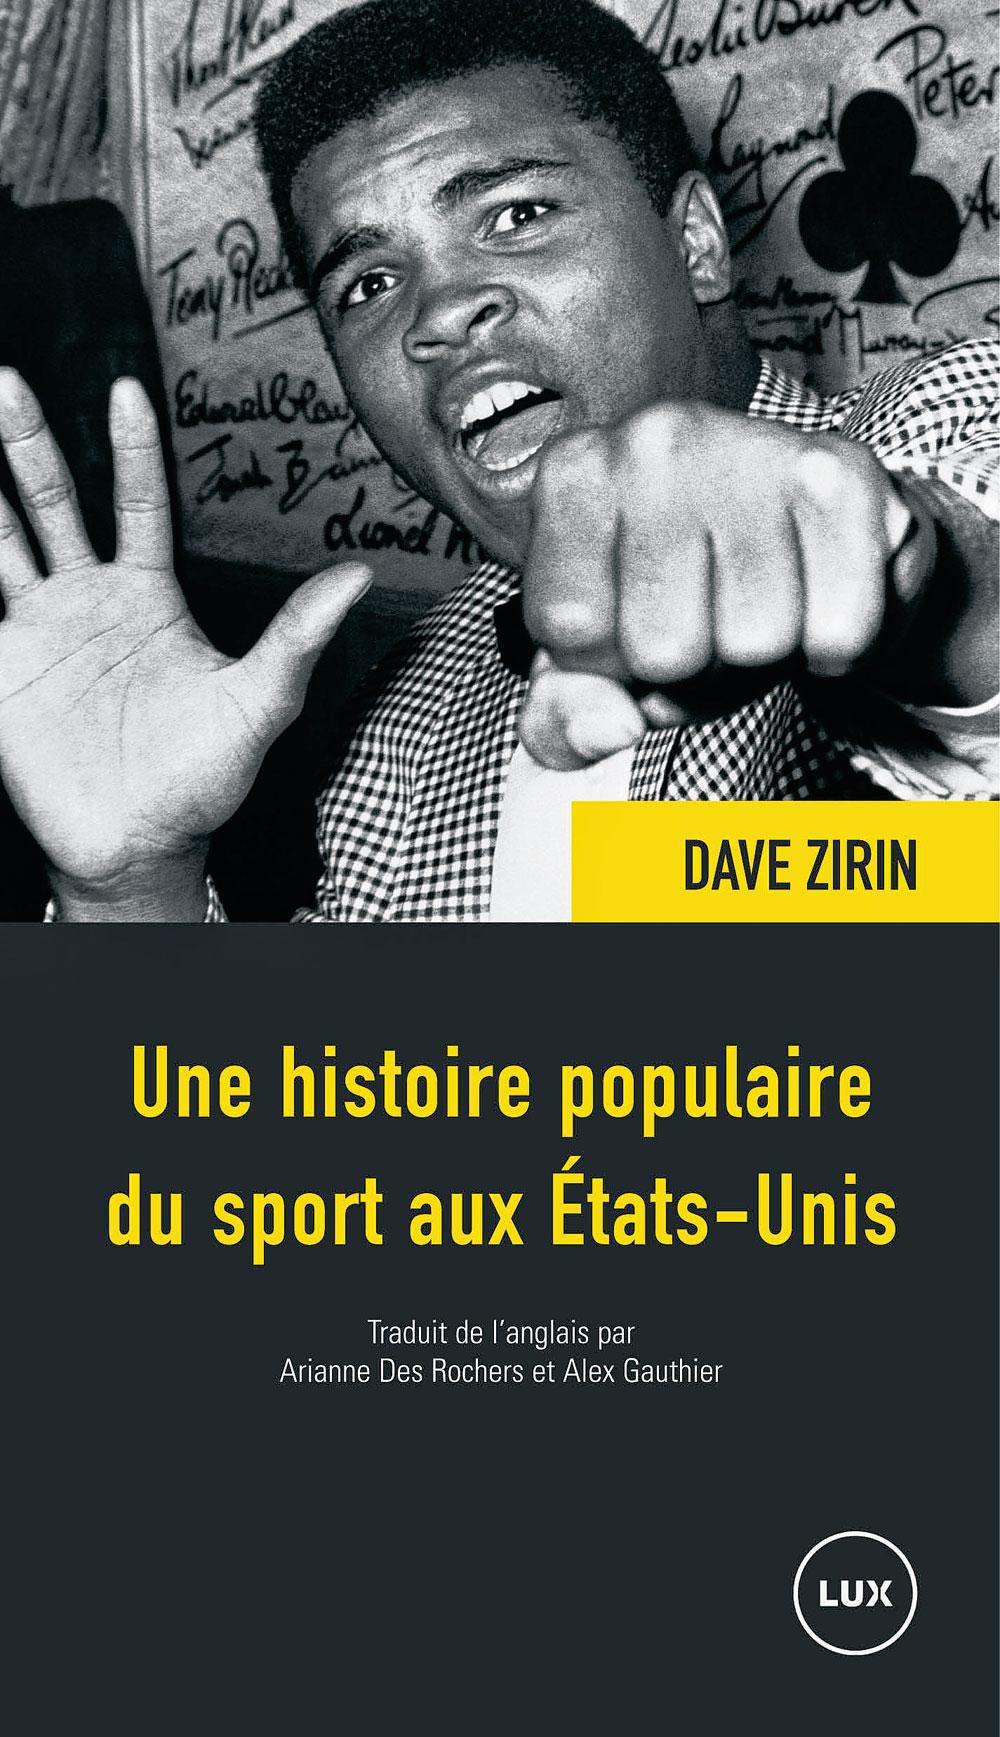 Histoire populaire du sport aux Etats-Unis, par Dave Zirin, traduit de l'anglais par Arianne Des Rochers et Alex Gauthier, éd. Lux, 400 p.